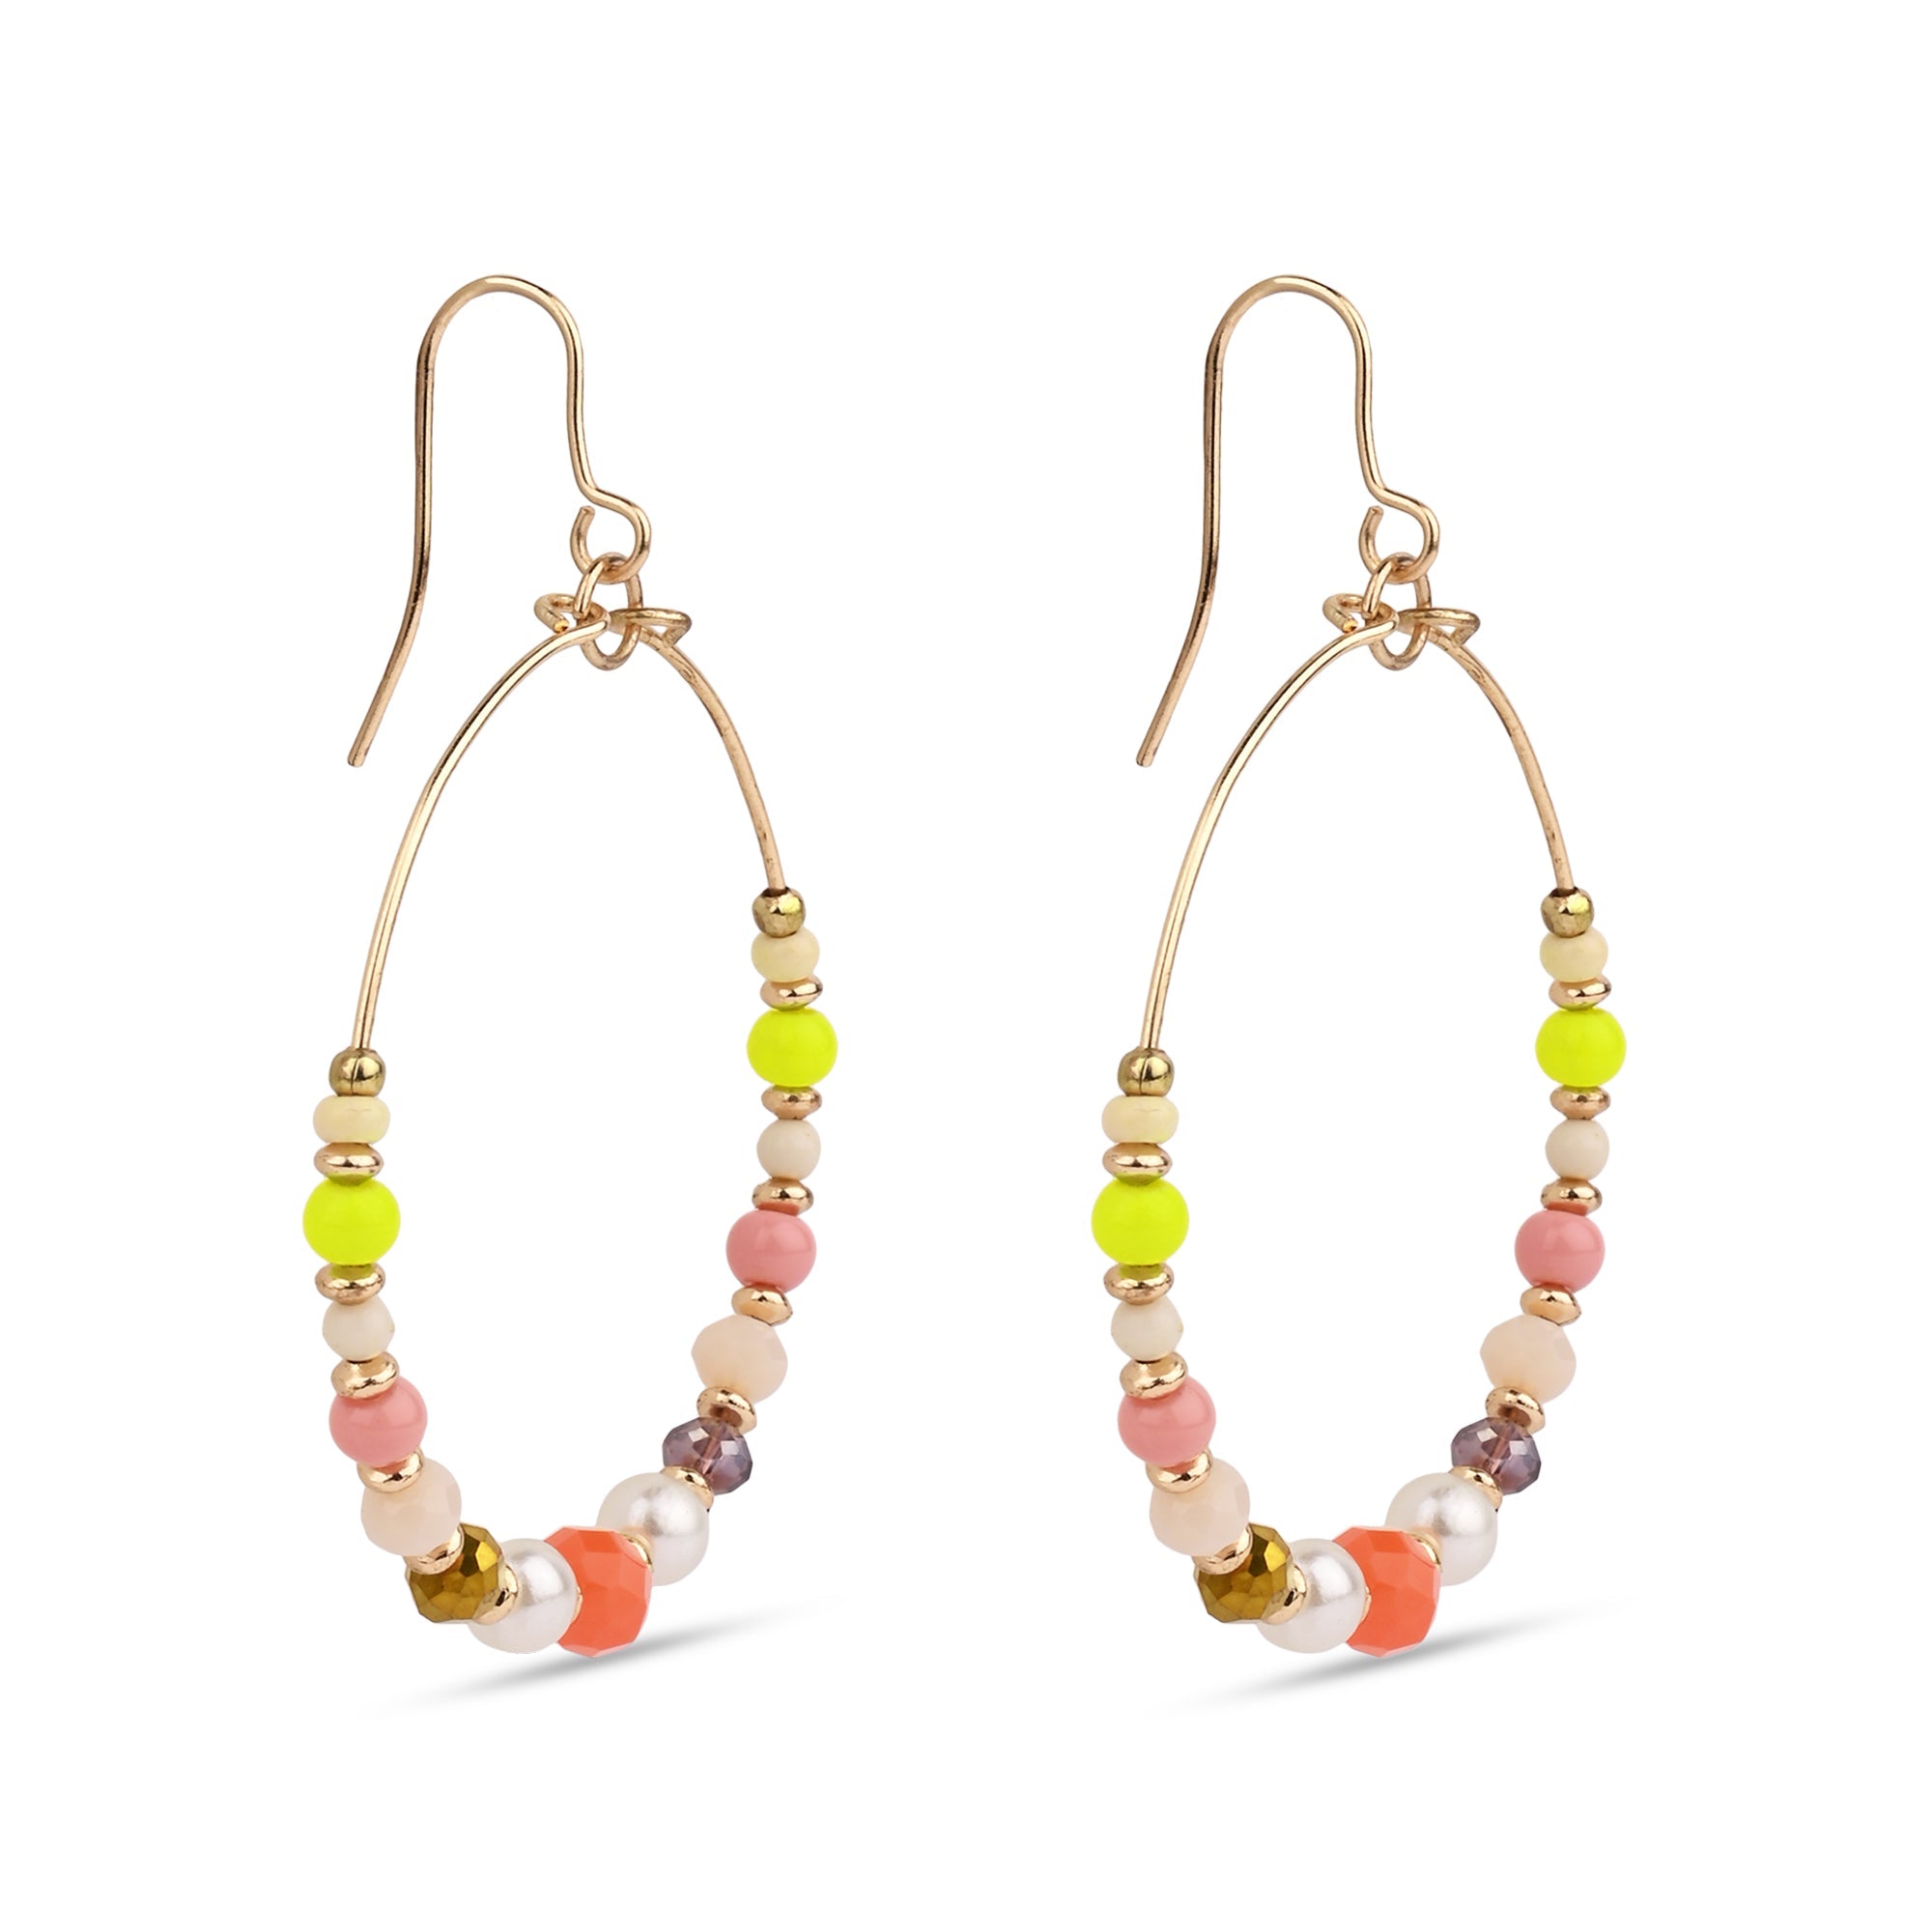 Buy Colorful Gemstone Hoop Earrings Gold Multi Color Stone Hoops Online in  India - Etsy